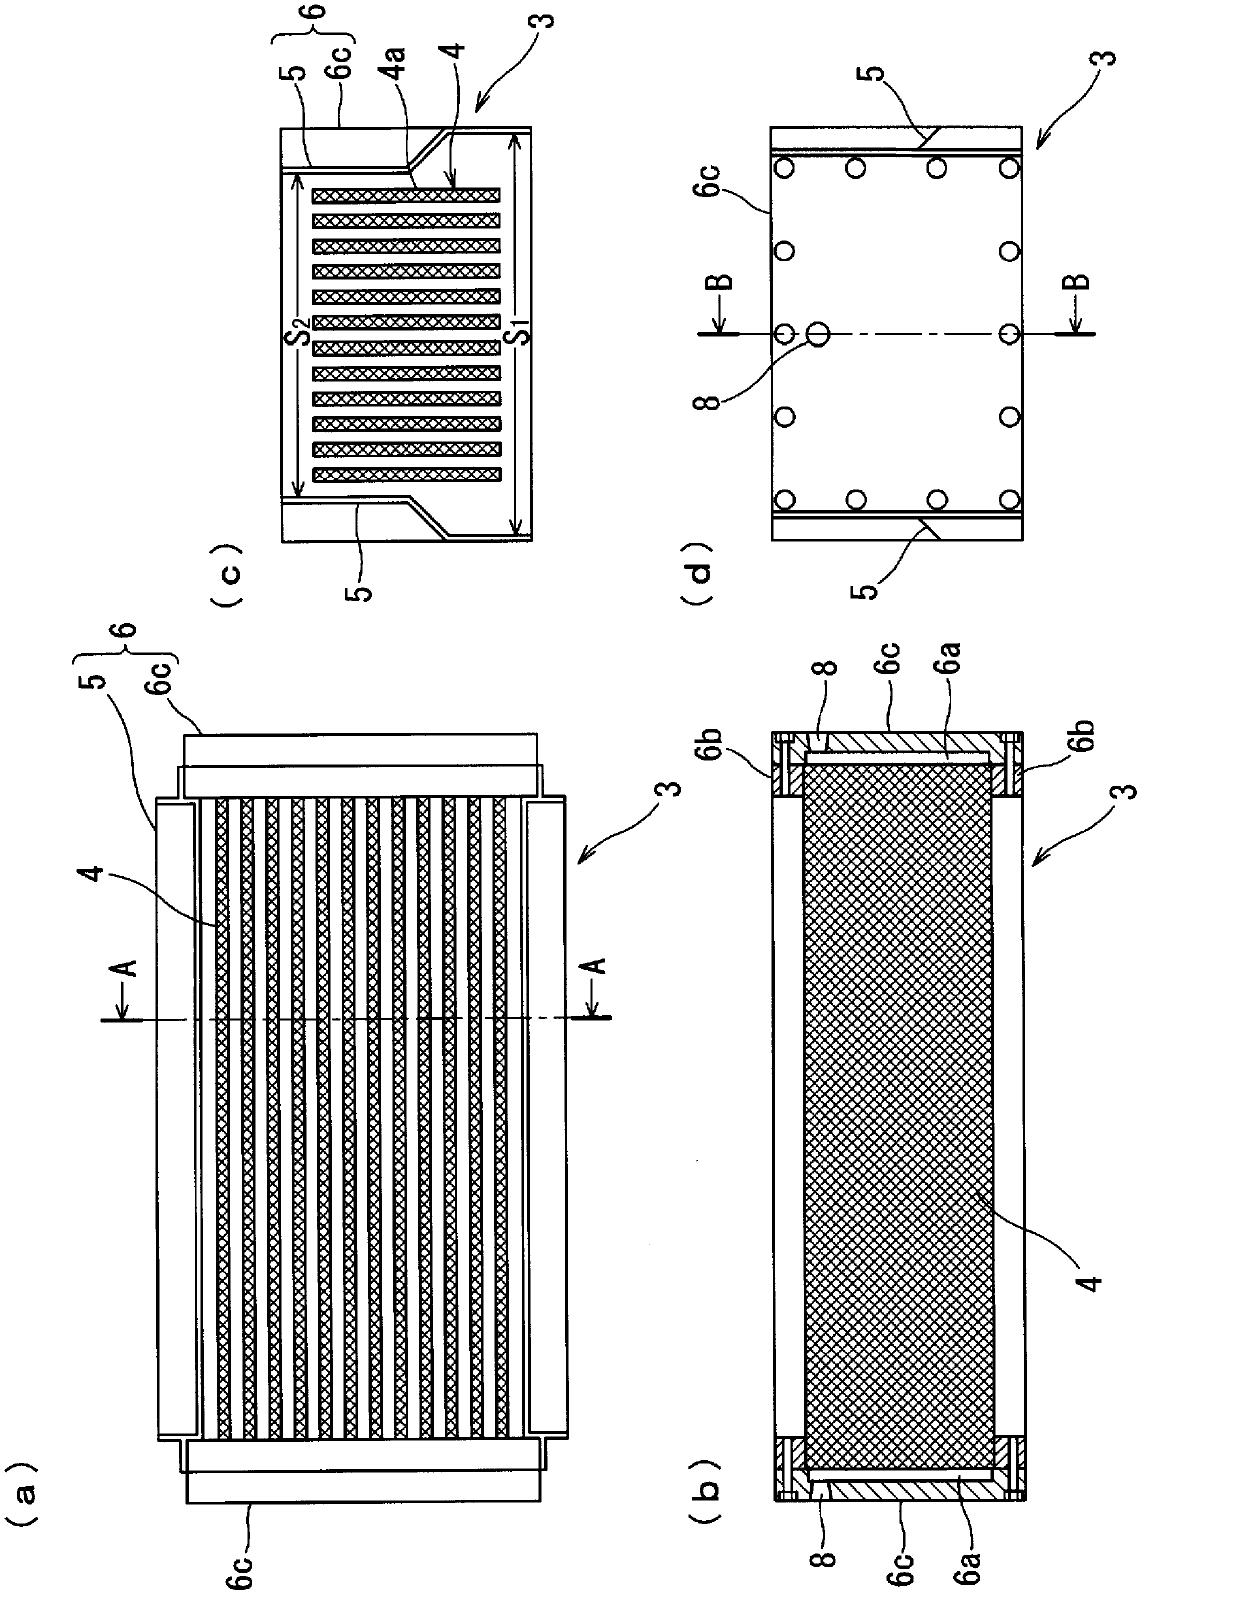 Membrane module, membrane unit, and membrane separation device